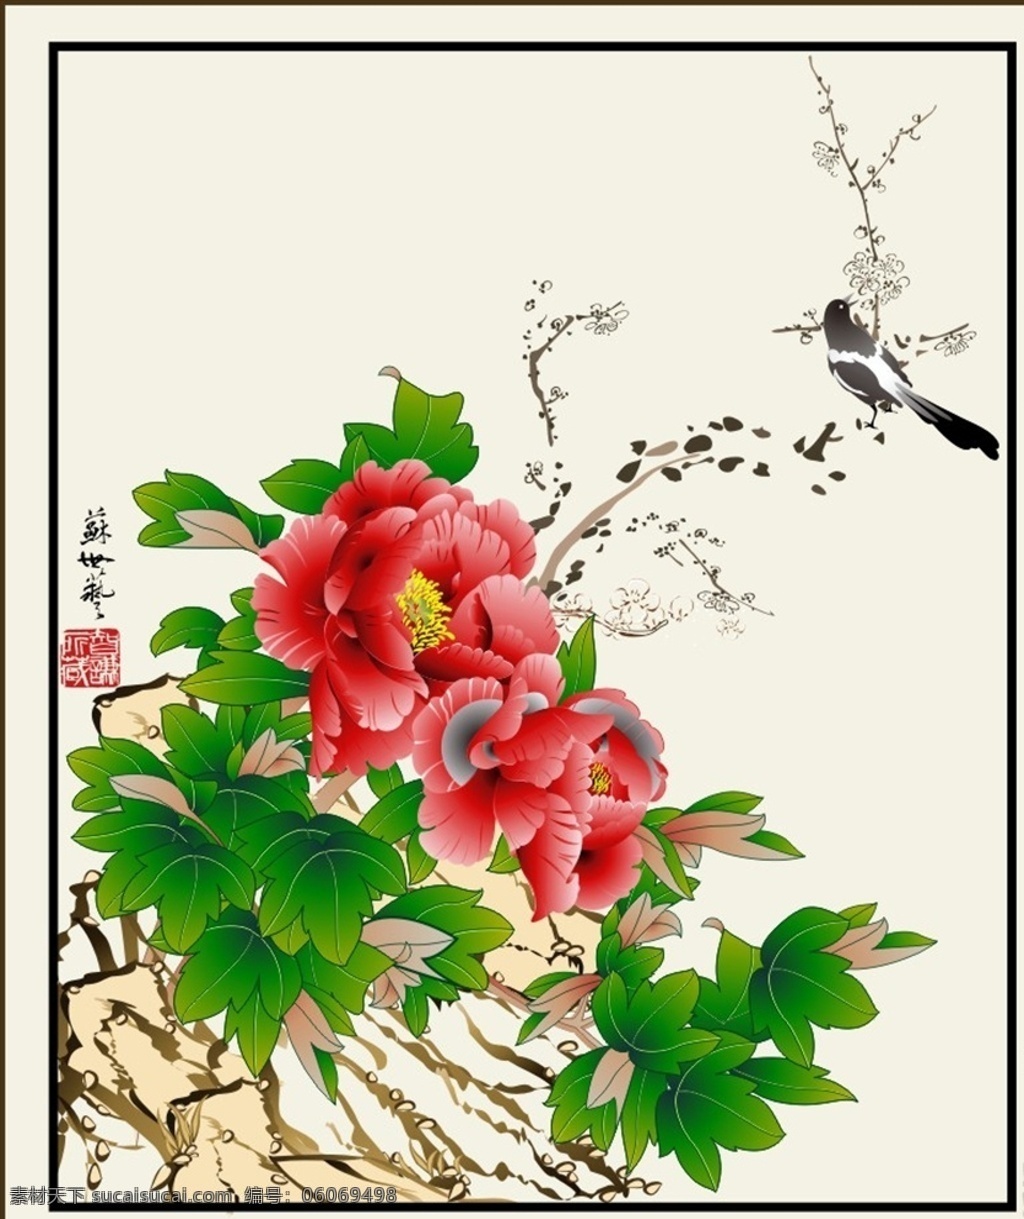 花鸟矢量素材 工笔花鸟 工笔画 中国画 喜鹊 精美鲜花 牡丹 水墨画 生物世界 花草